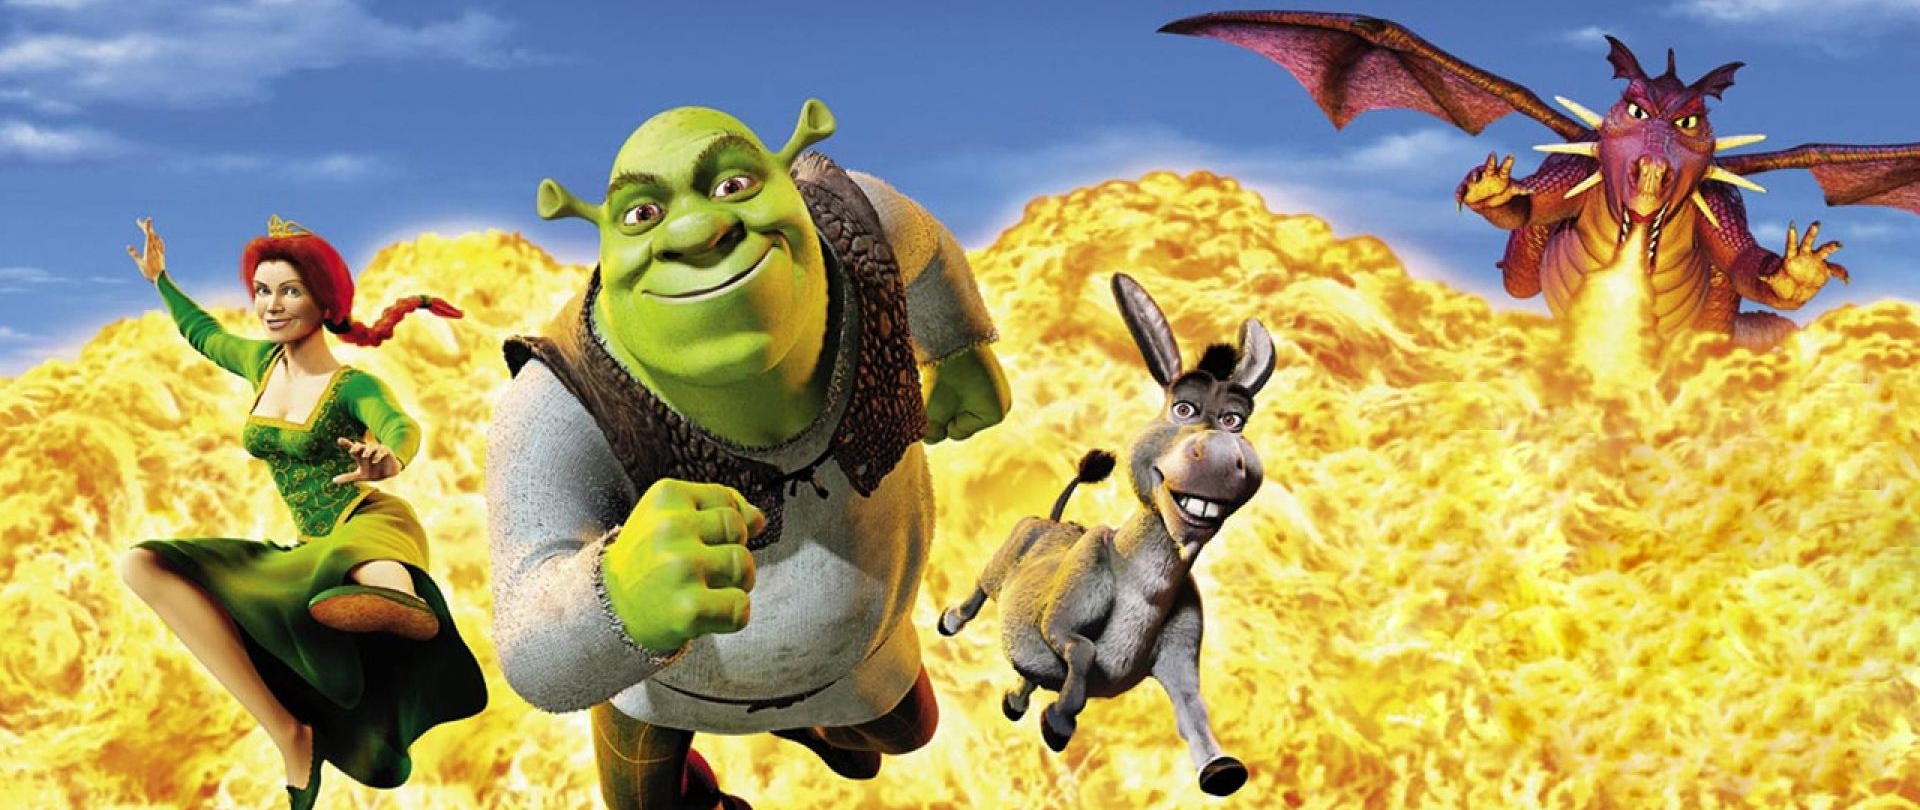 Zavvi is releasing the Shrek Blu-ray Steelbook as an Exclusive